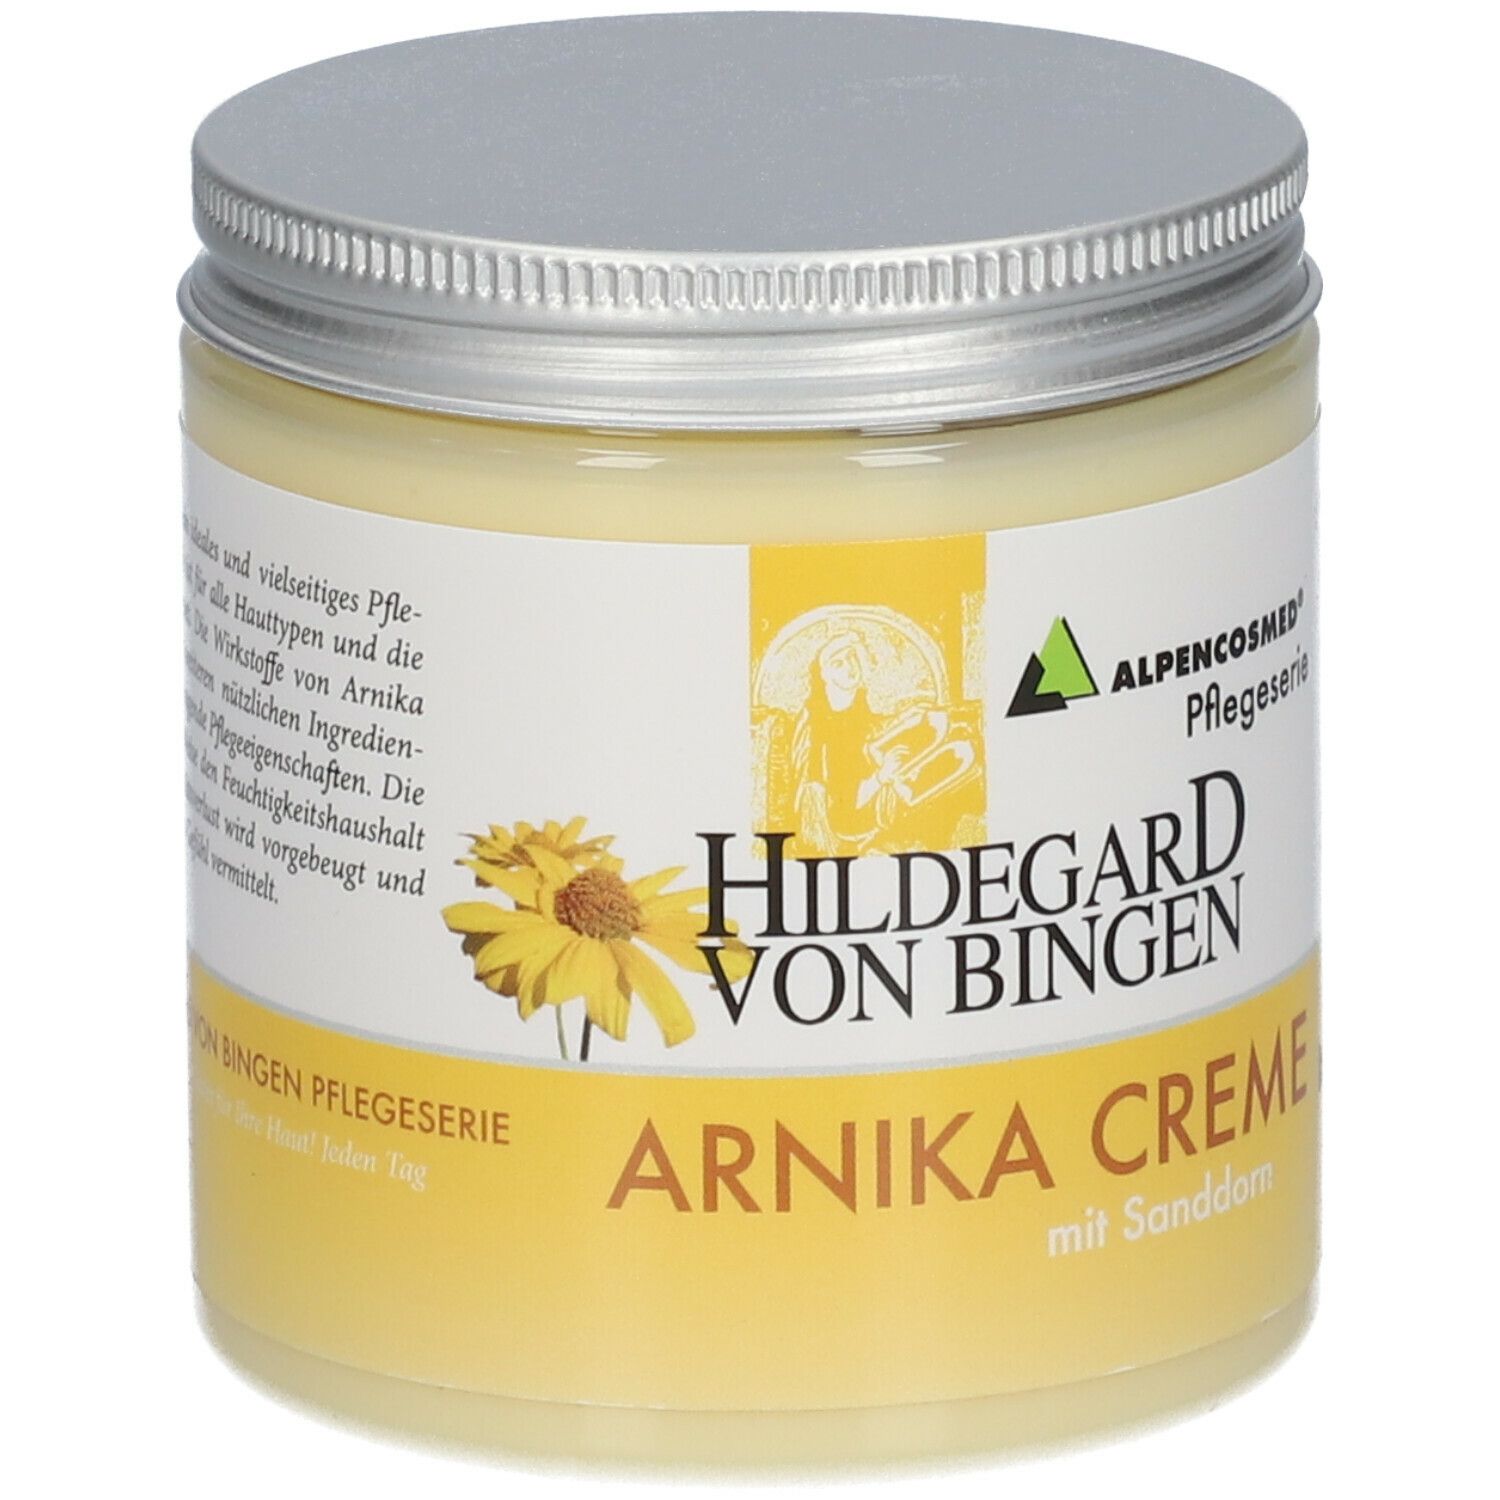 Alpencosmed® Hildegard von Bingen Arnika-Creme